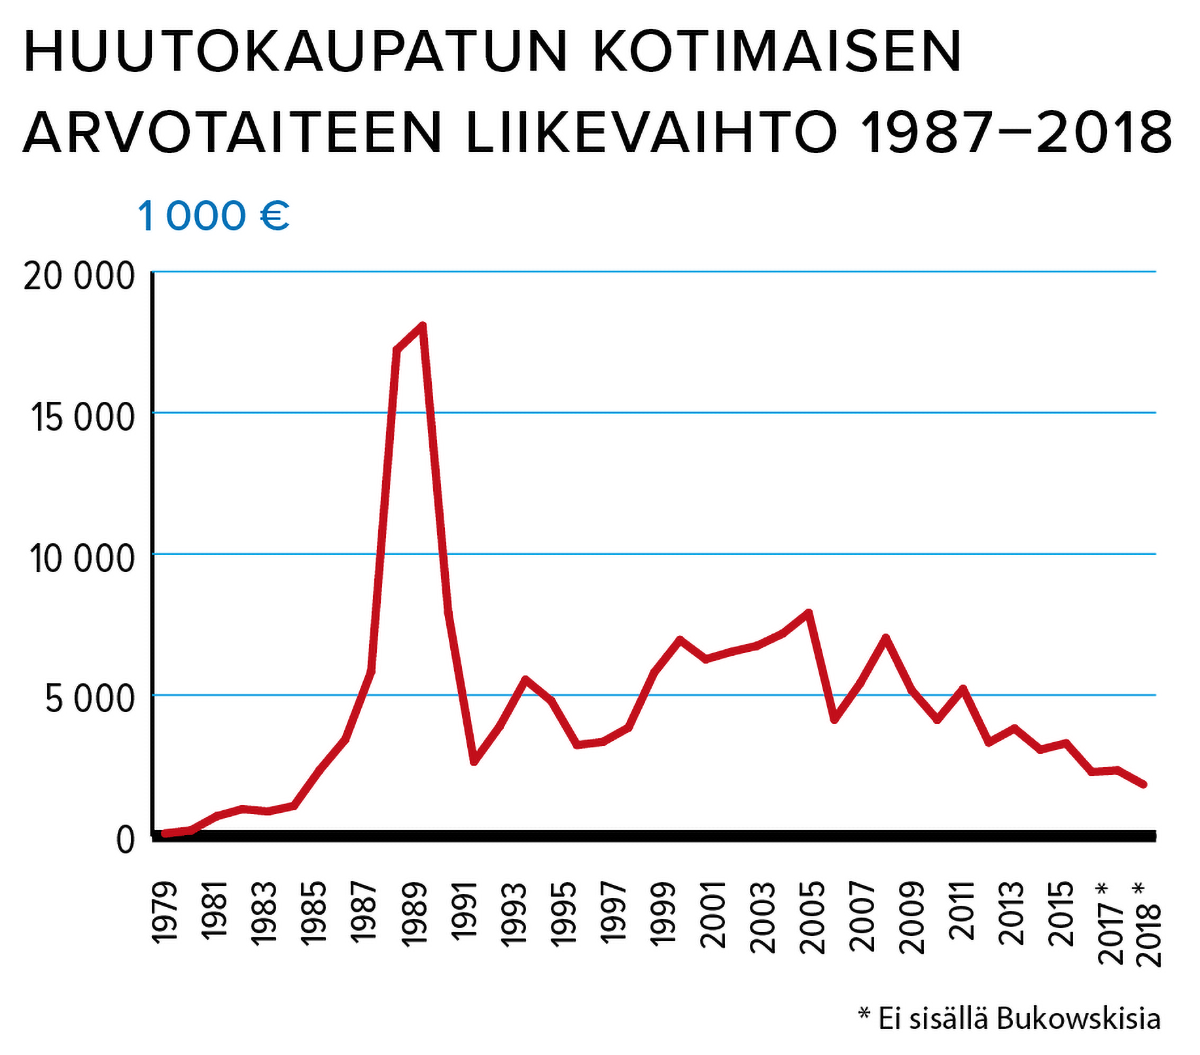 Huutokaupatun kotimaisen arvotaiteen liikevaihto 1979-2018 Lähde: Kulttuuritilasto 2019, Tilastokeskus